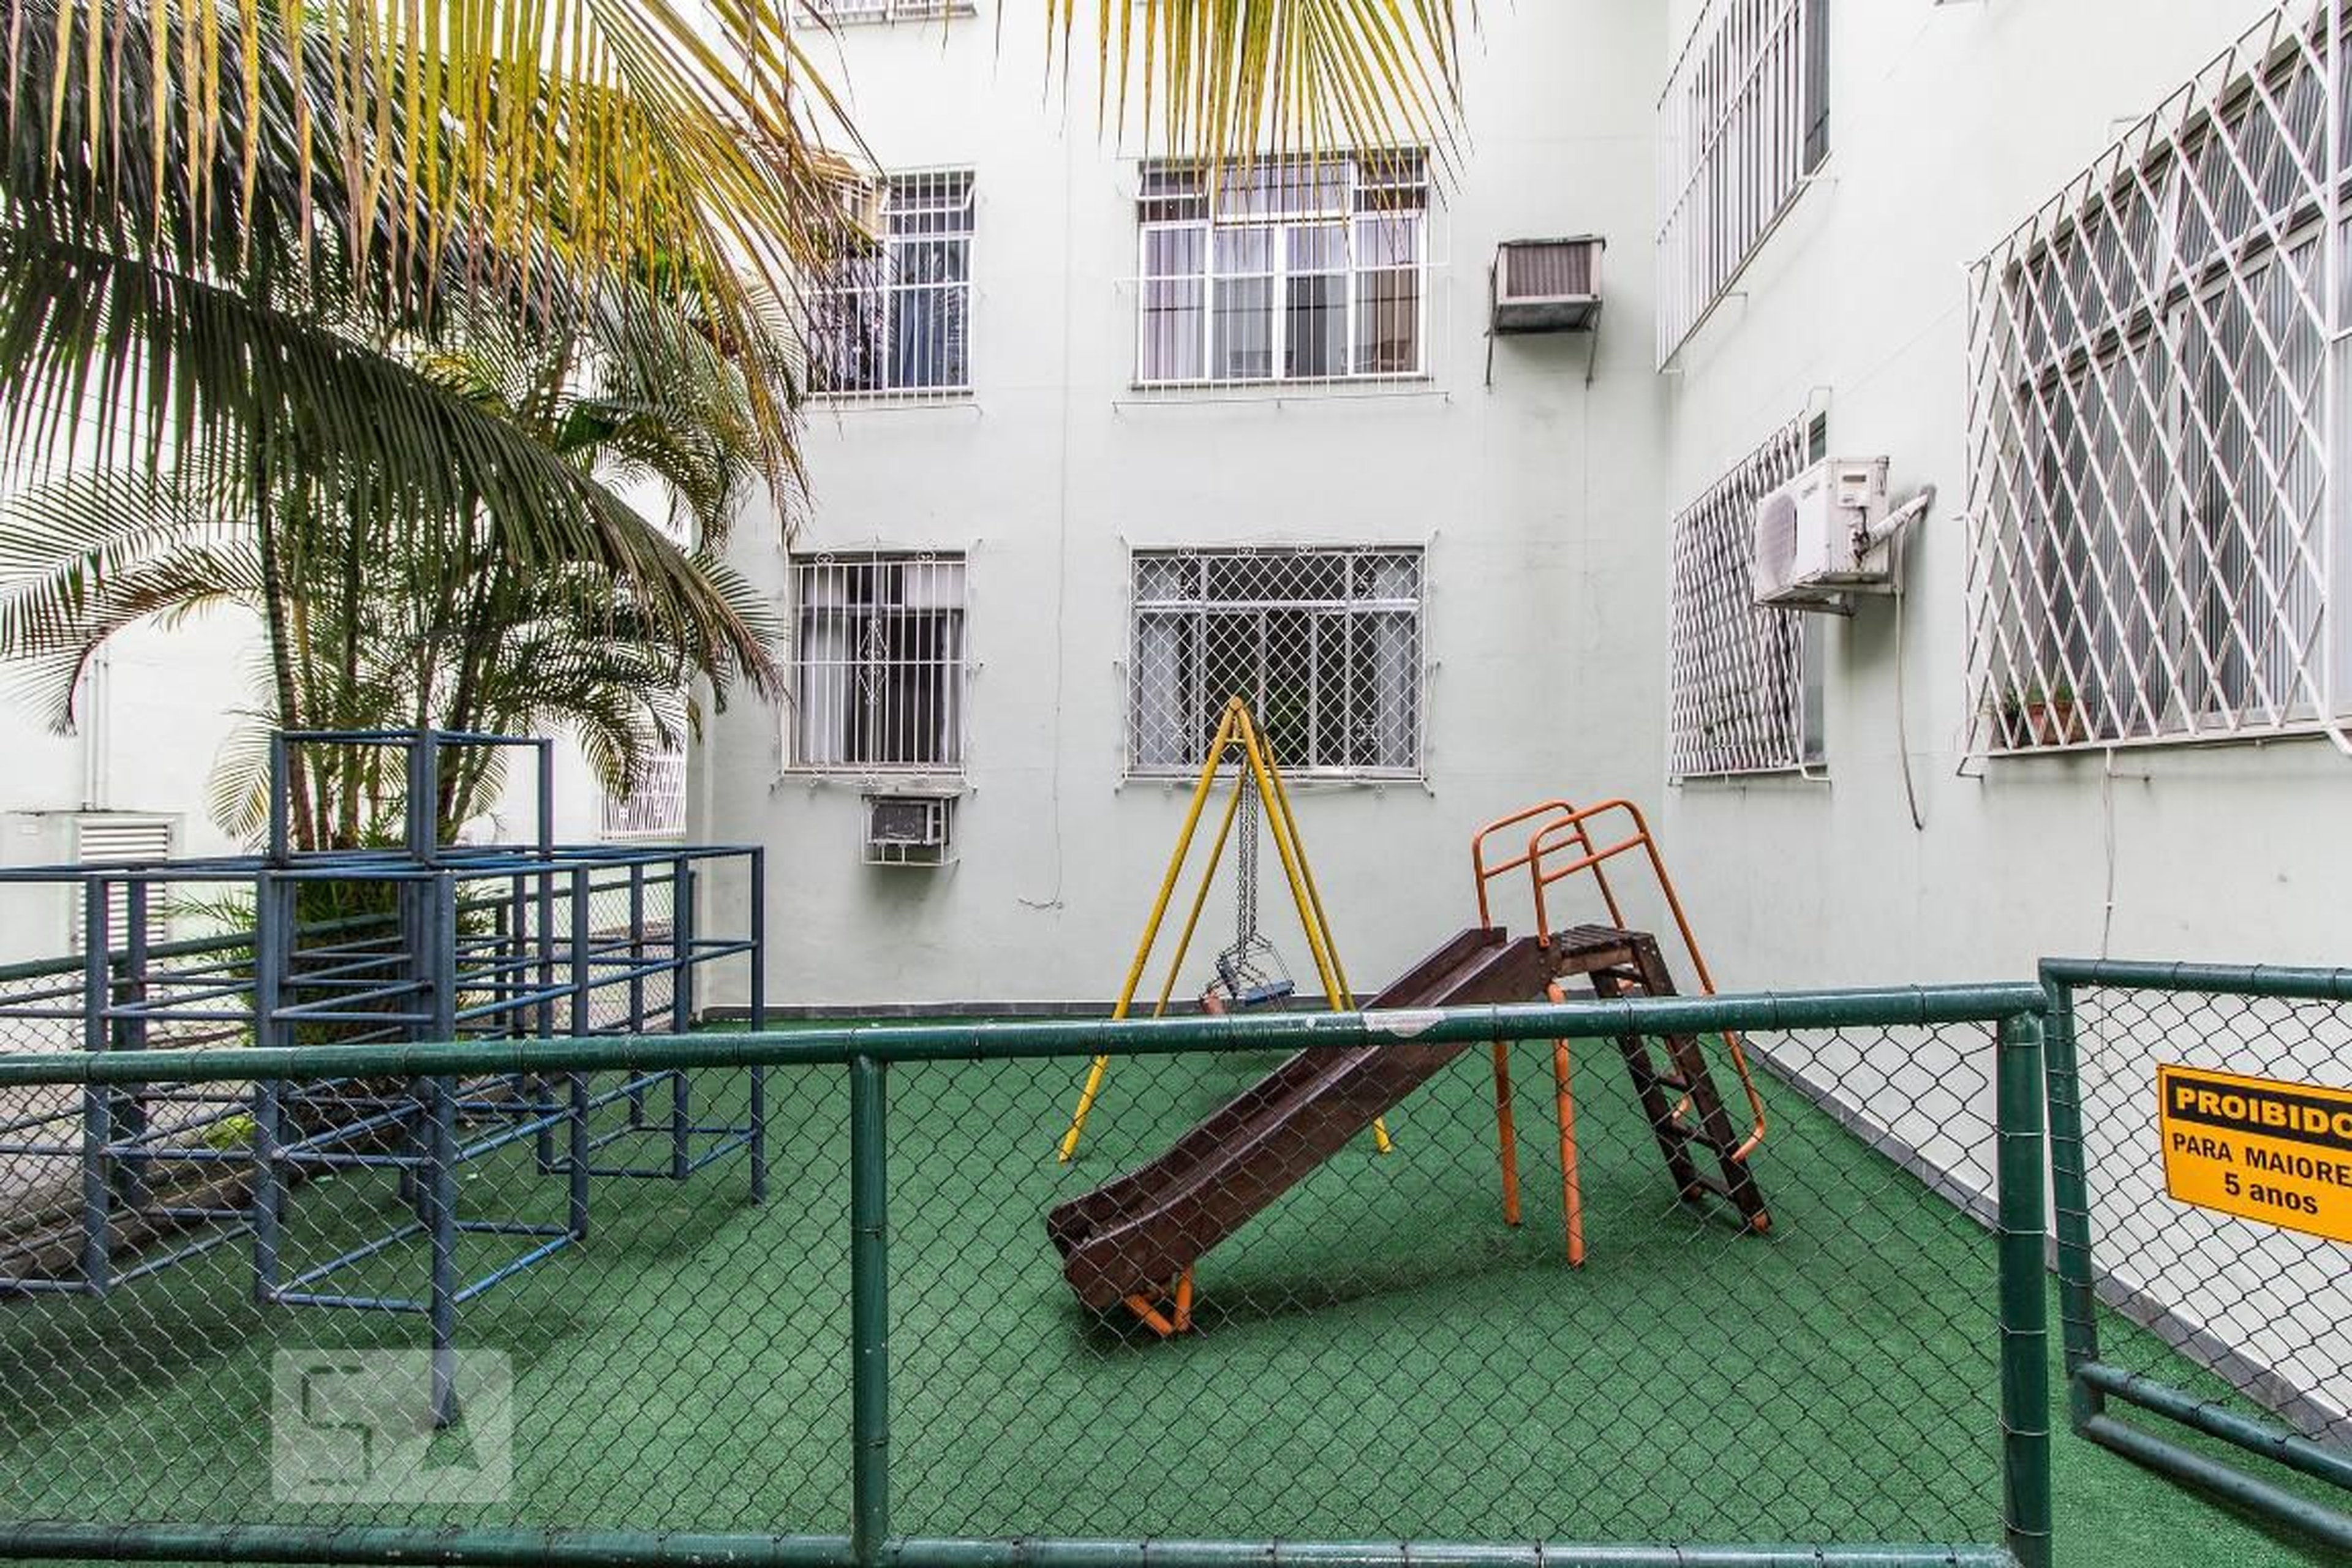 Playground - Barão de Rio Branco